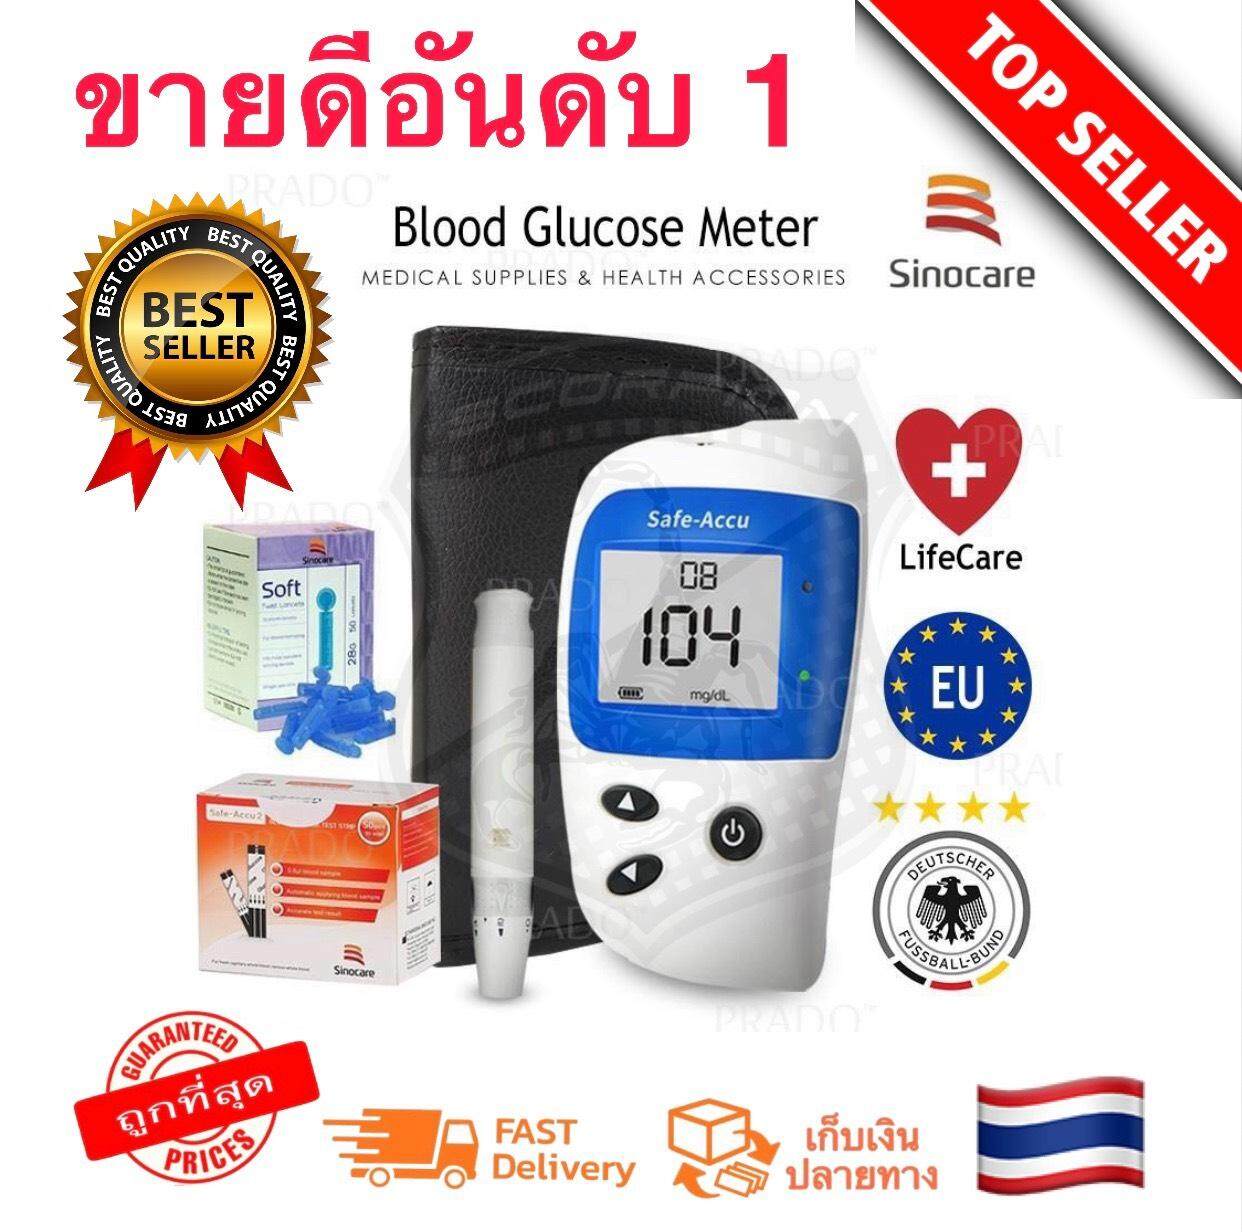 เครื่องตรวจวัดน้ำตาล Glucose Sinocare รุ่น Safe-Accu2 เครื่องวัดน้ำตาล ฺBlood glucose meter